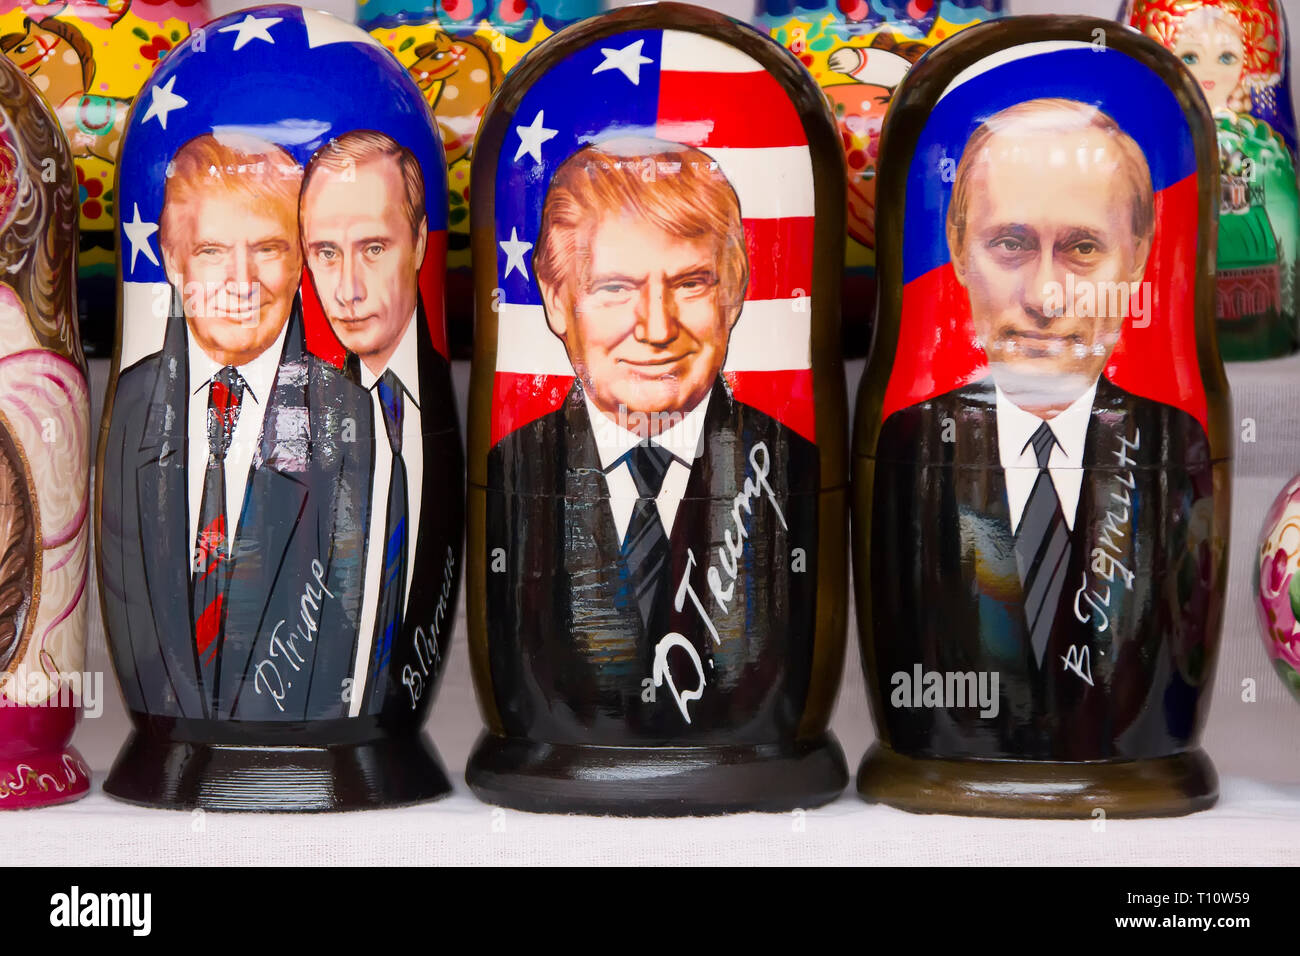 . Russische traditionelle verschachtelte Puppen. Puppen haben ein Porträt von Wladimir Putin und Donald Trump Stockfoto